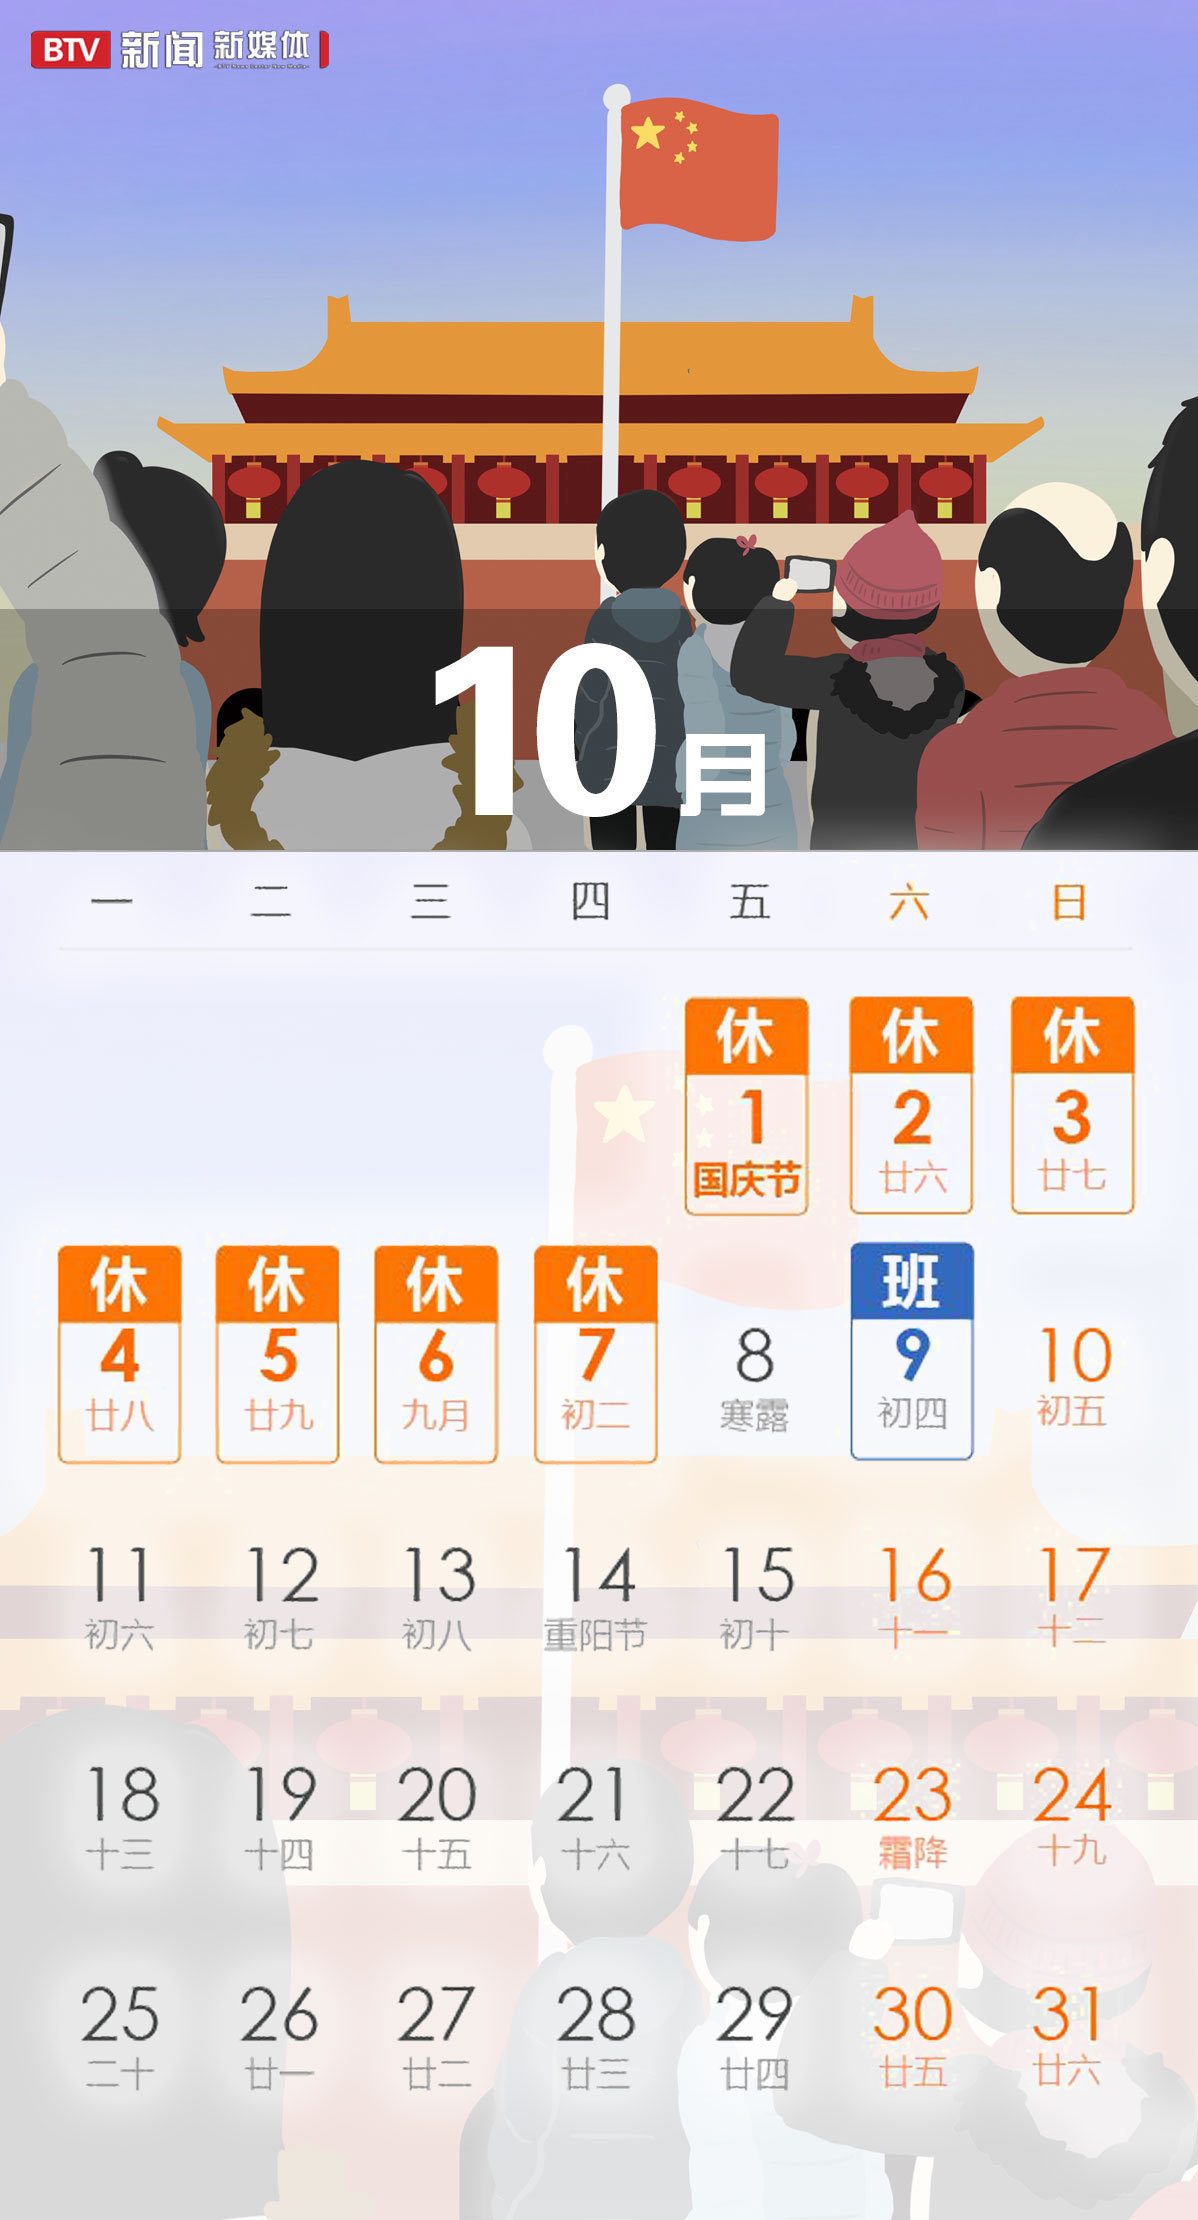 七,国庆节:10月1日至7日放假调休,共7天.